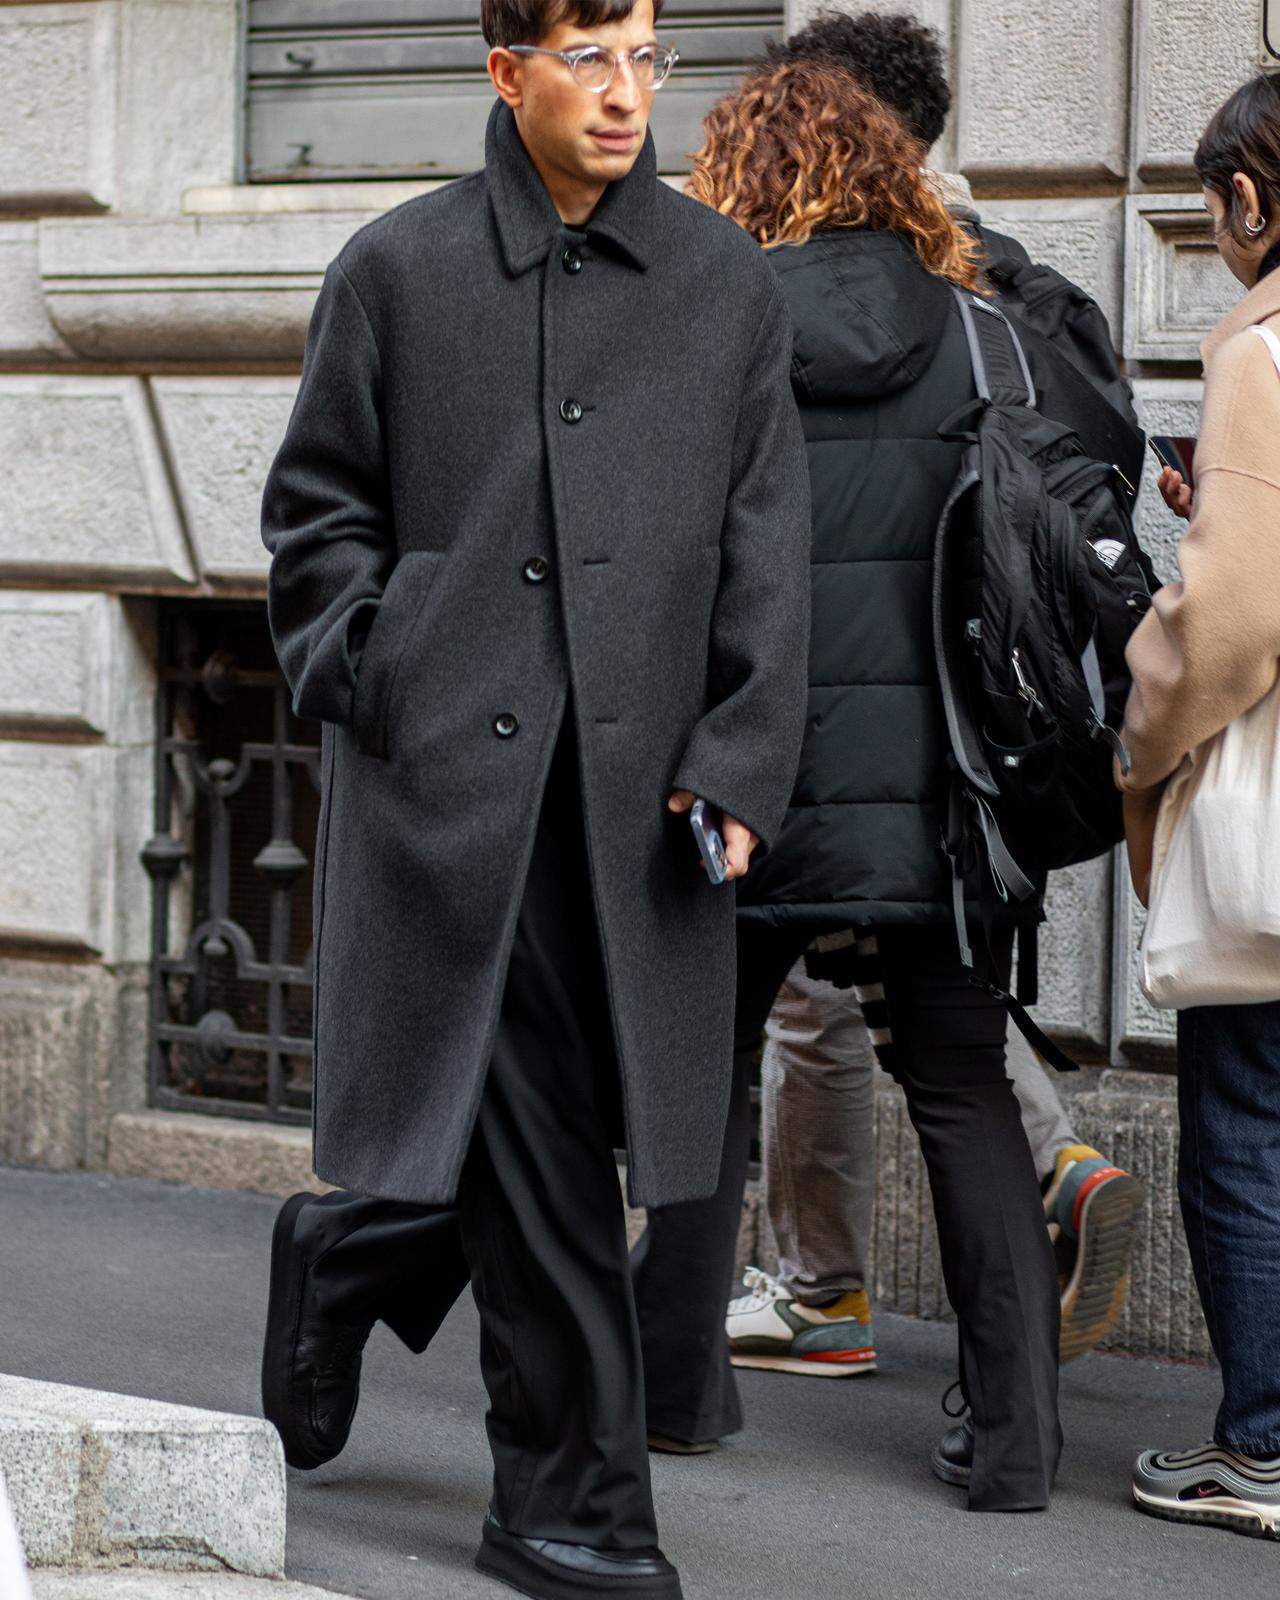 Un homme marchant dans une rue avec un téléphone portable à la main